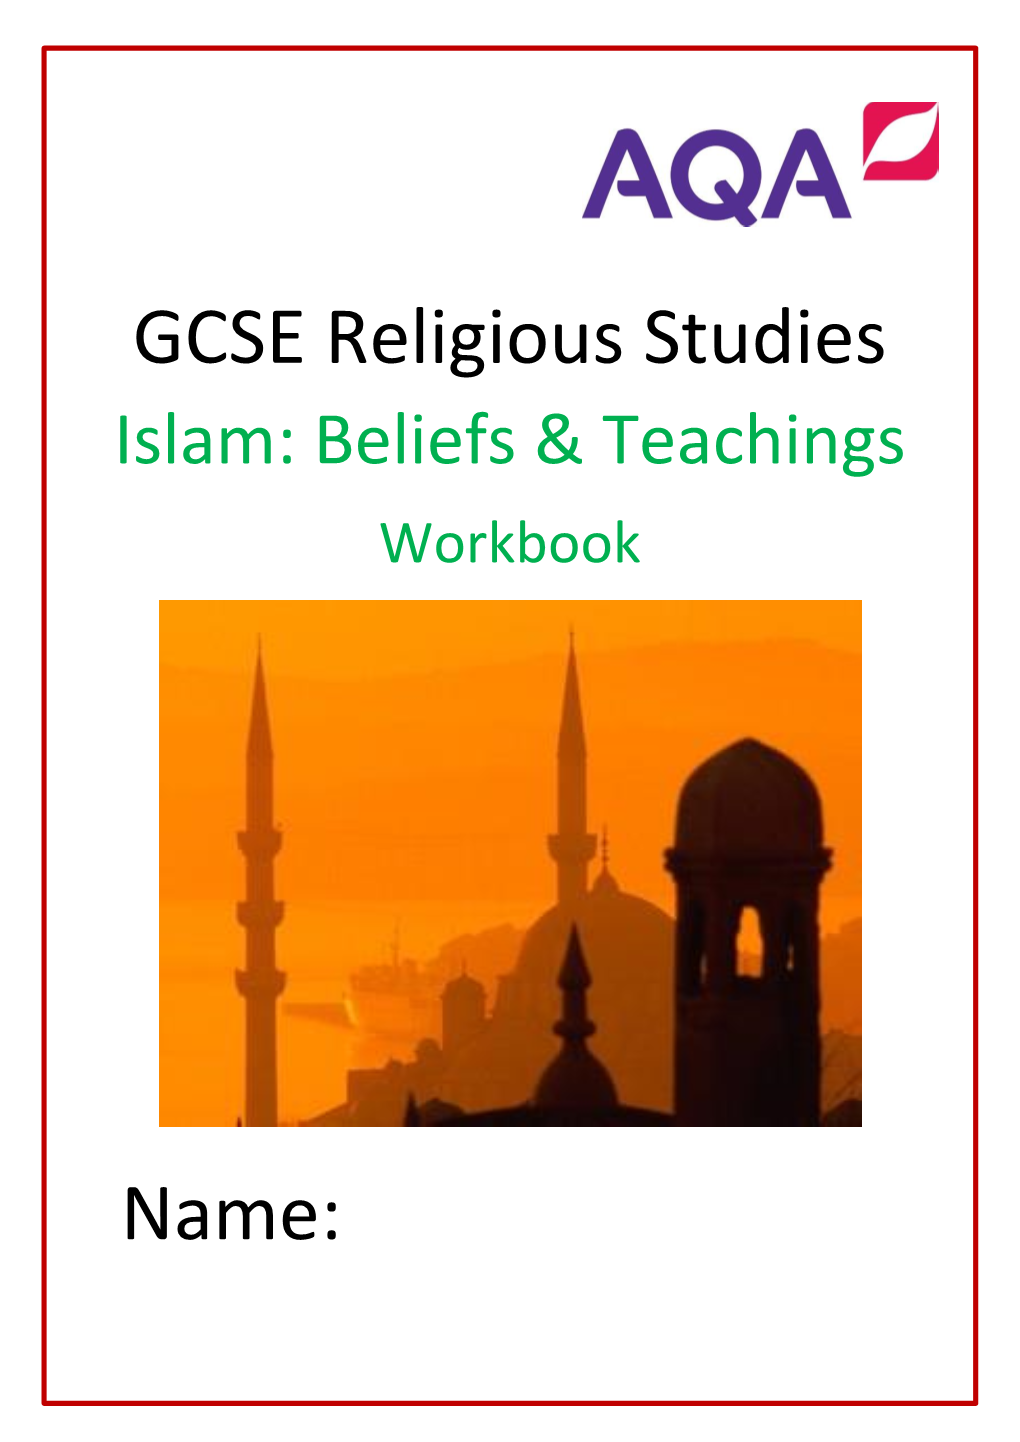 GCSE Religious Studies Name